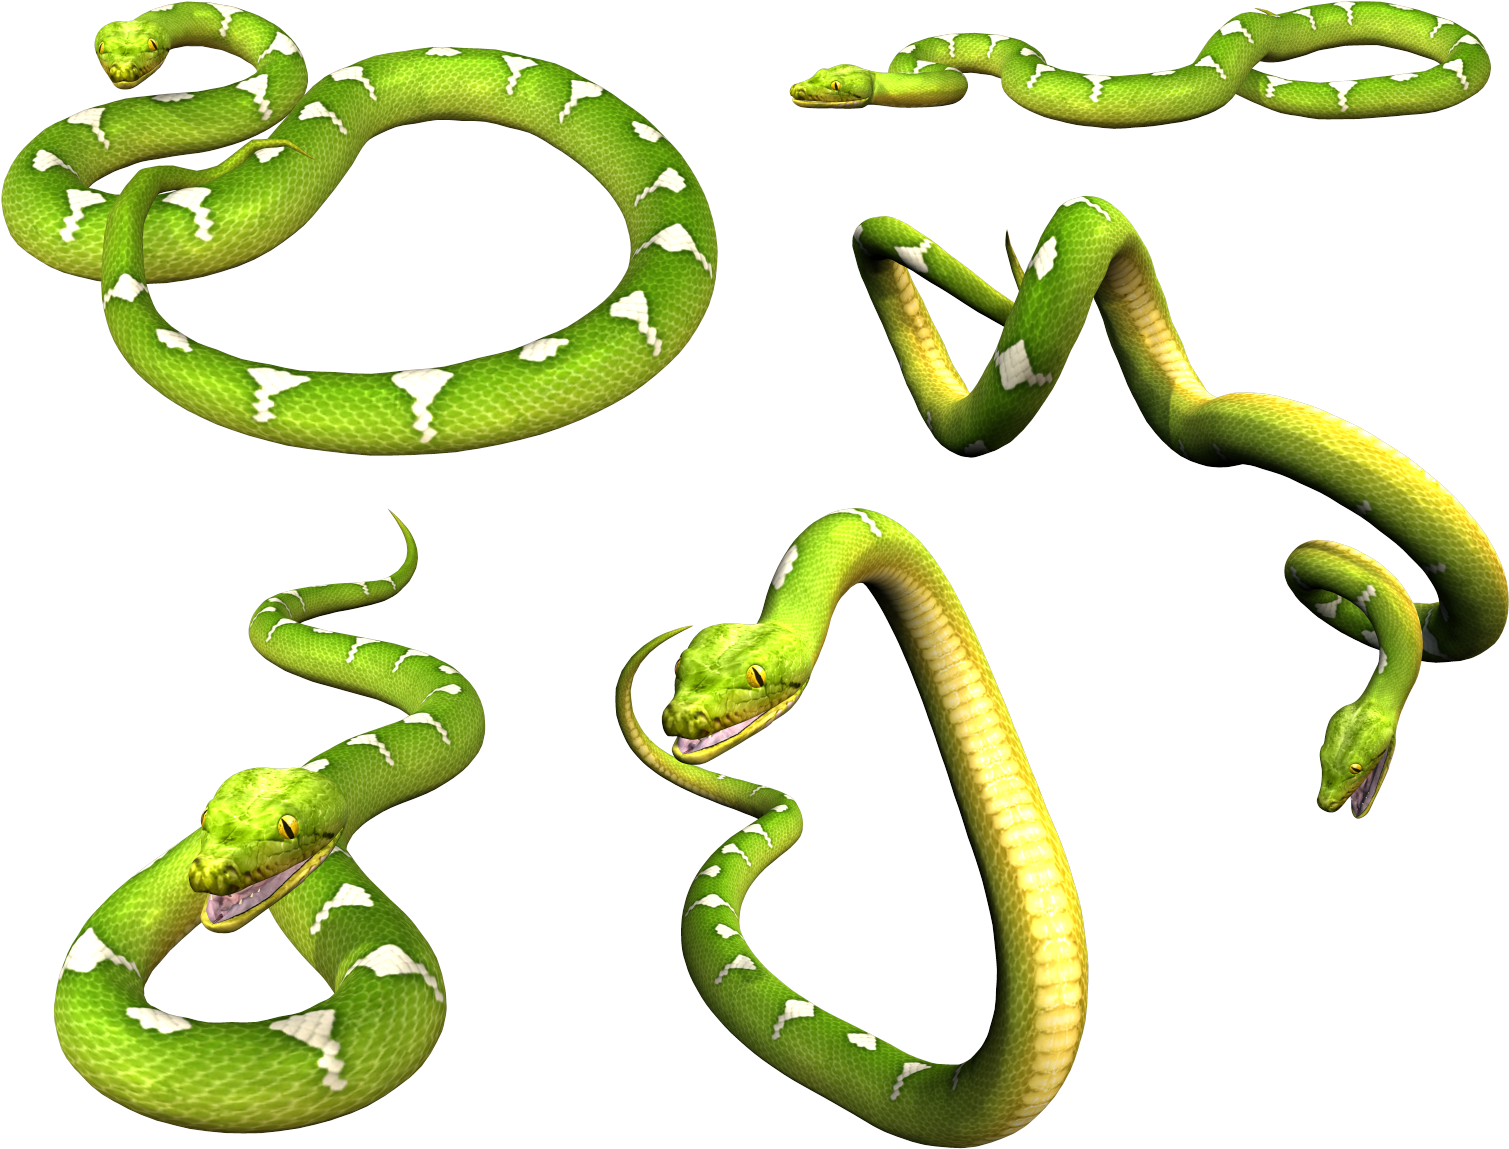 Fotos de PNG de serpiente